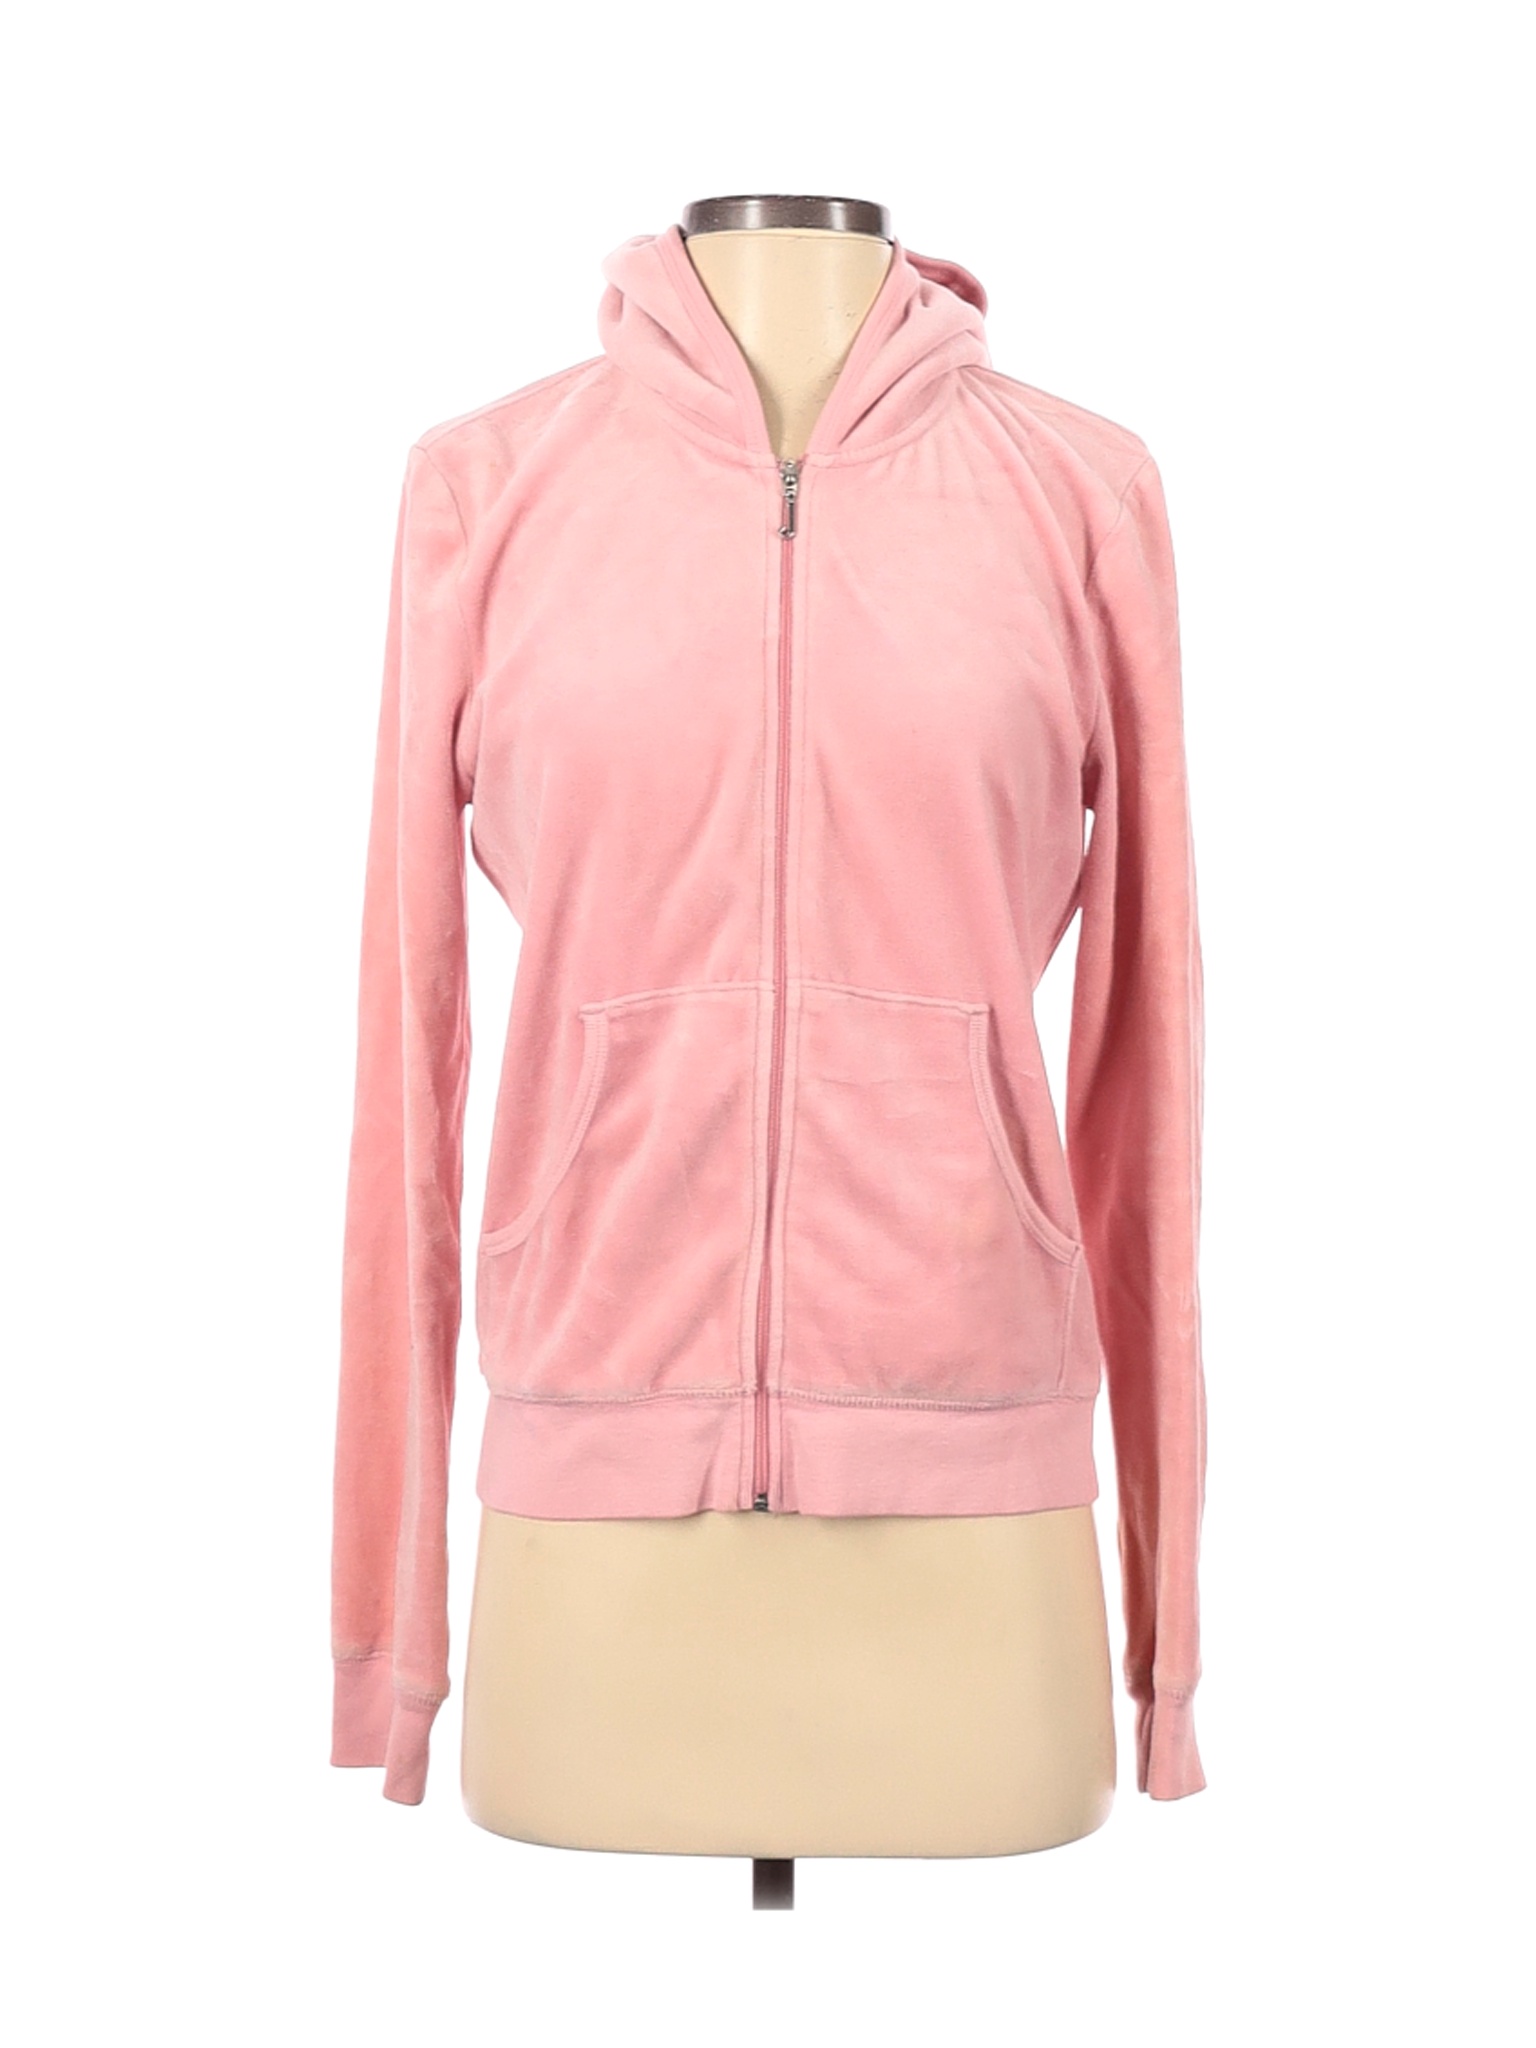 Juicy Couture Women Pink Zip Up Hoodie XS | eBay